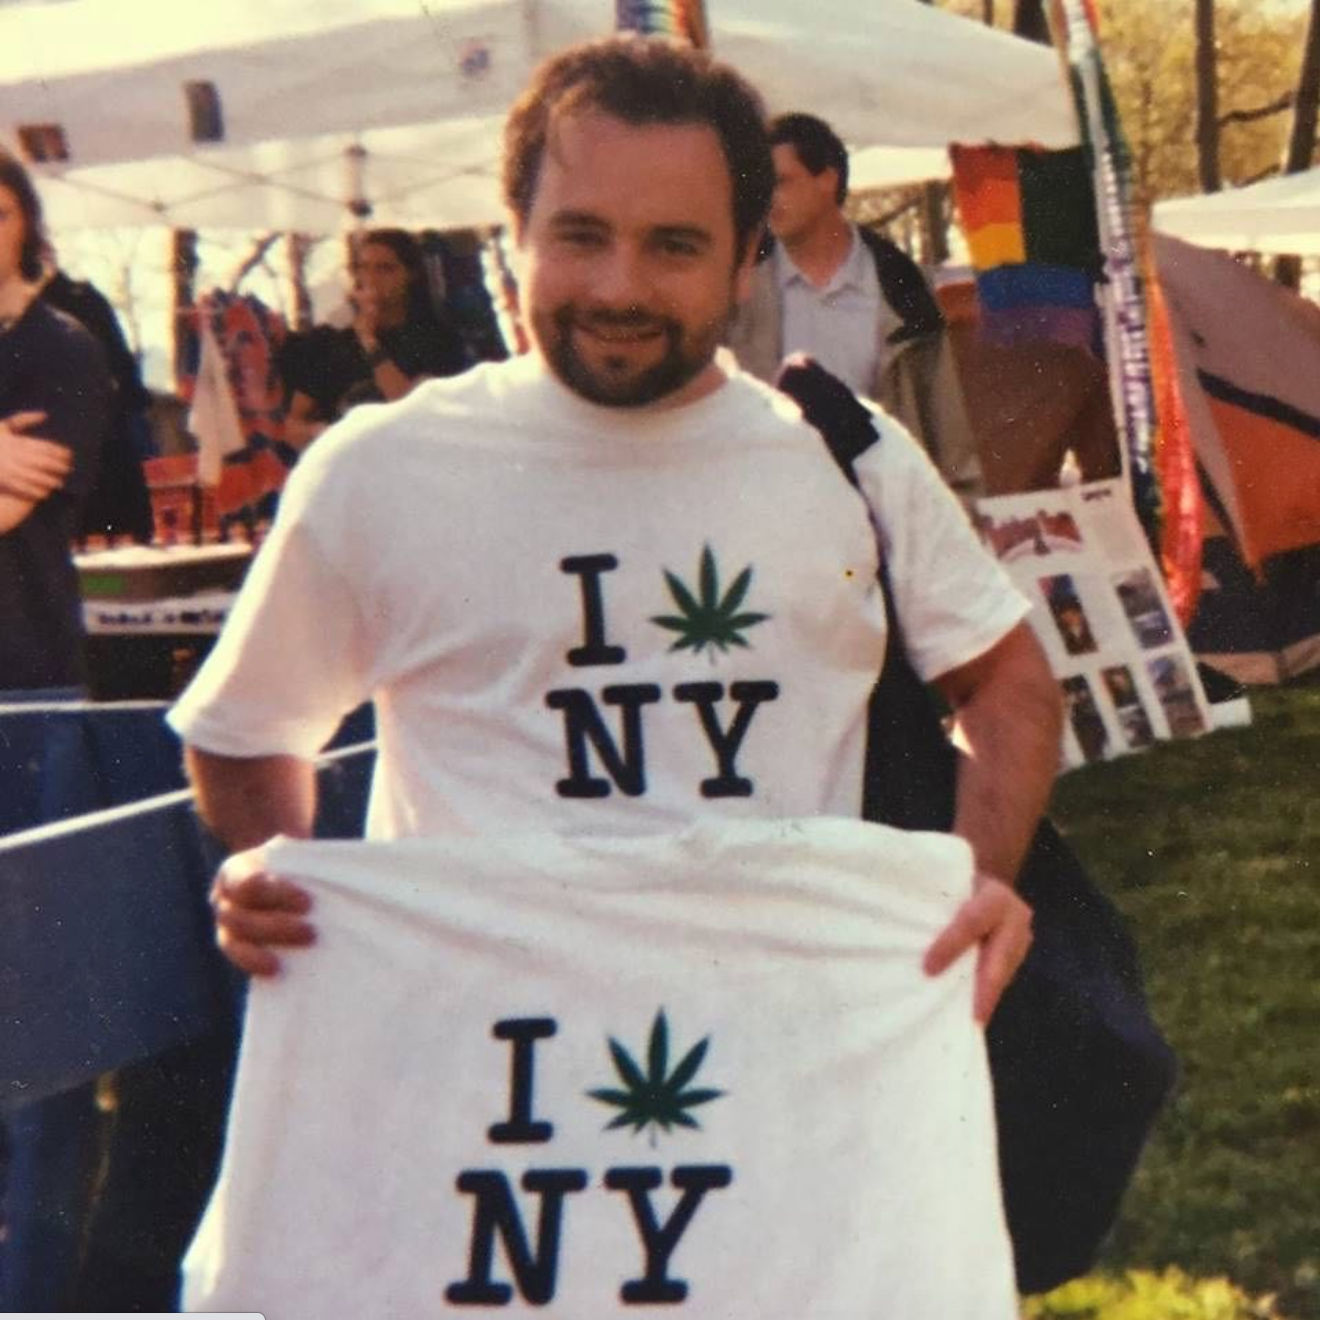 Danny at NYC Pot Parade in 1998